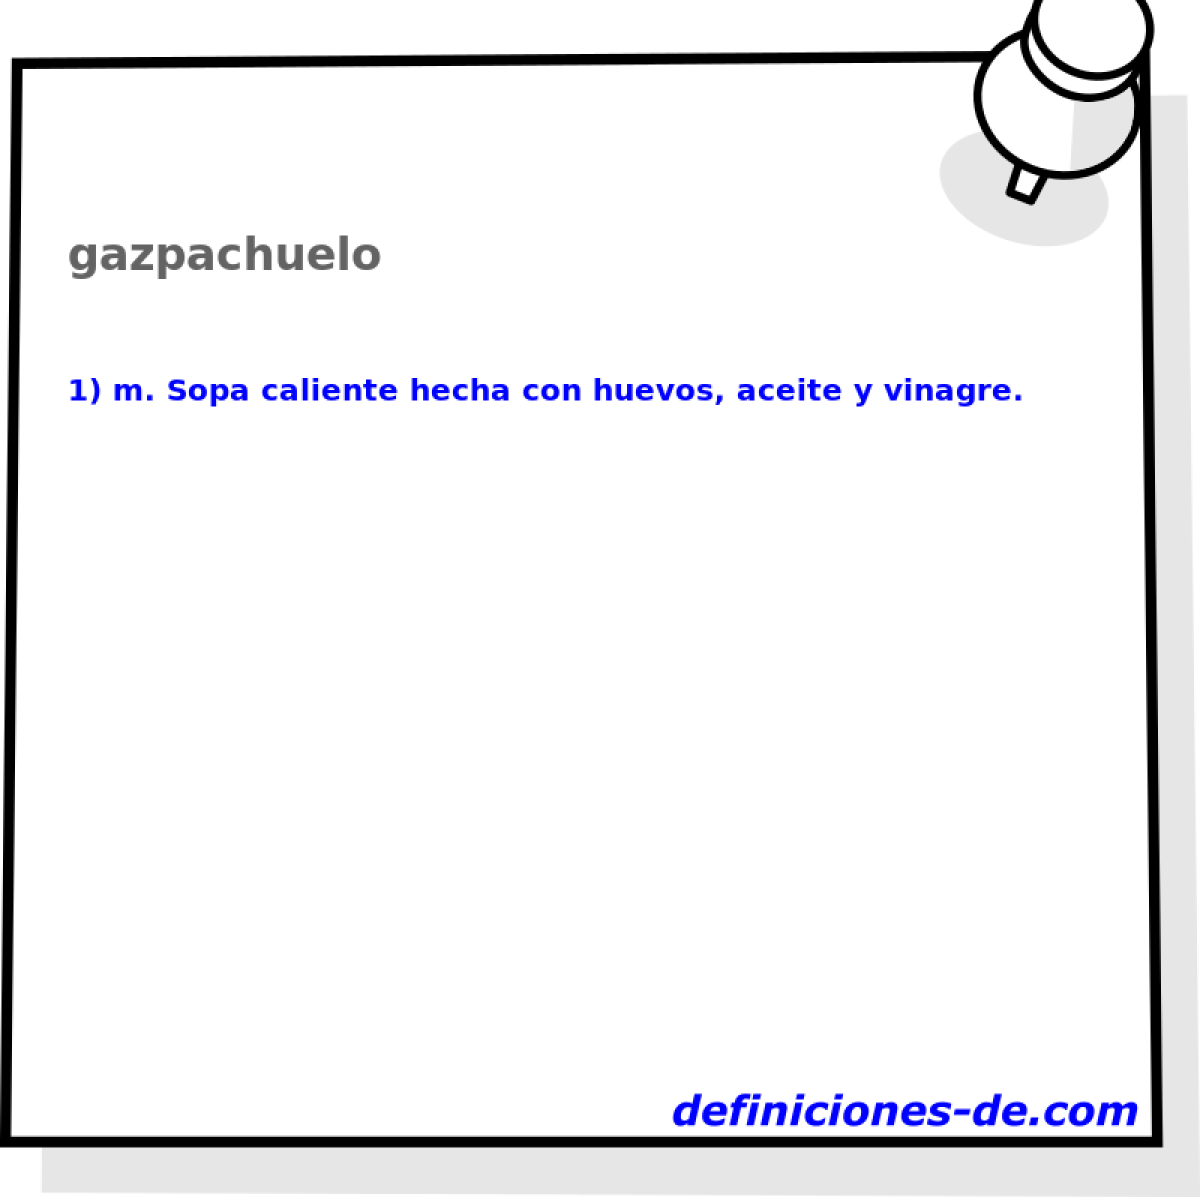 gazpachuelo 